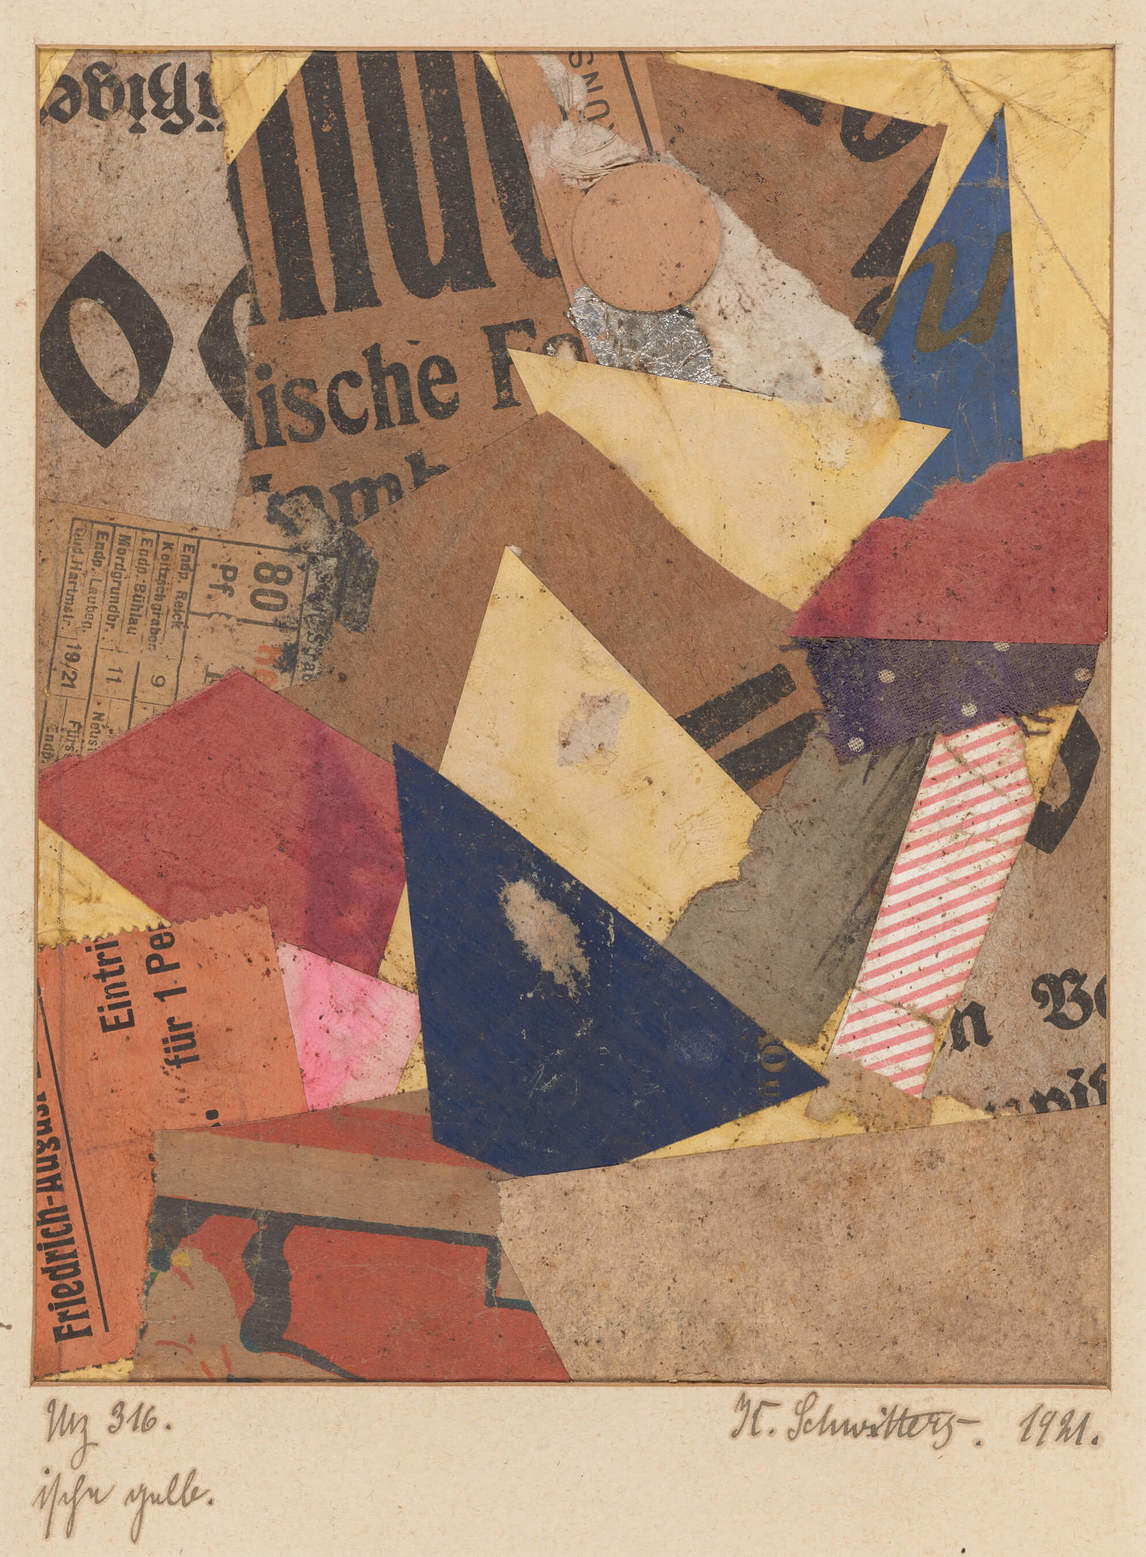 Art Canada Institute, Kurt Schwitters, Mz 316 ische gelb (Mz 316 ische Yellow), 1921